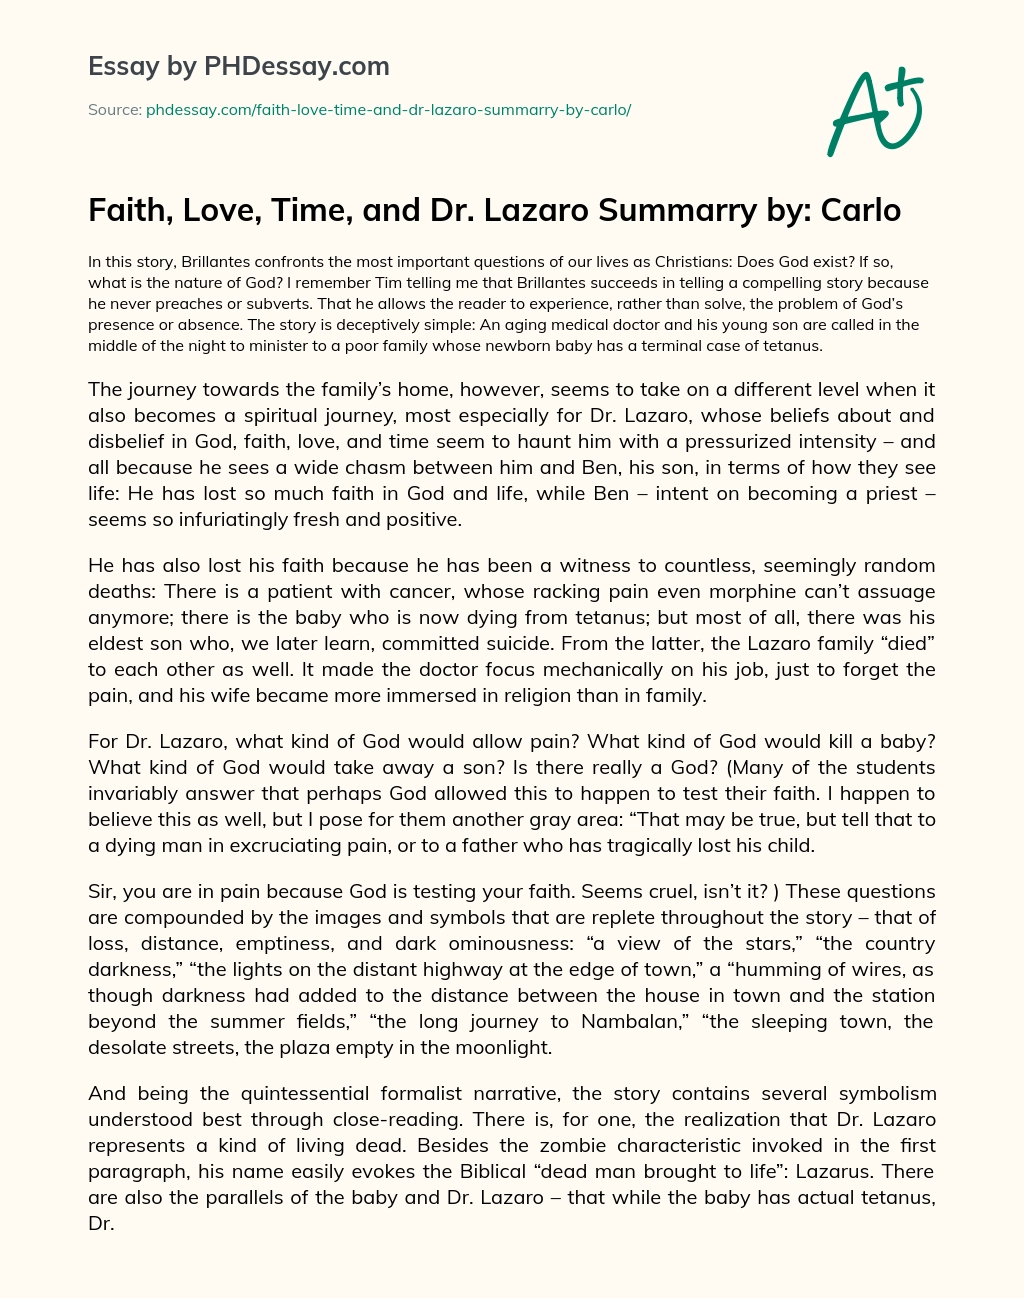 Faith, Love, Time, and Dr. Lazaro essay